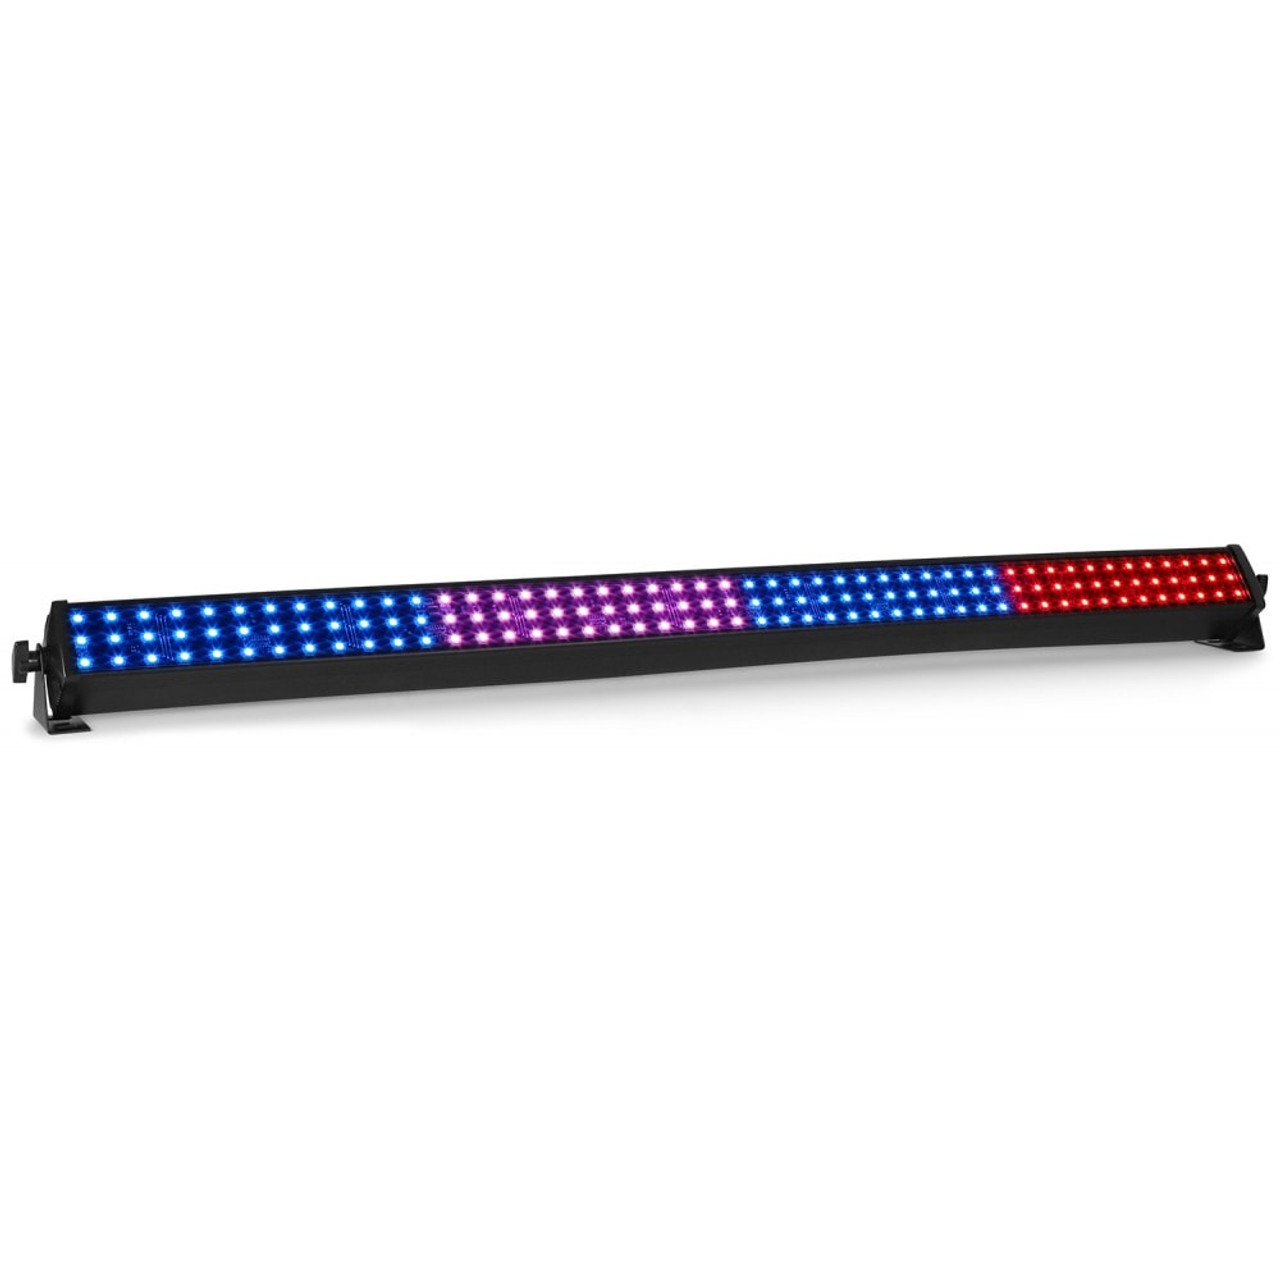 Beamz LCB144 MKII LED Colour Bar RGB IRC